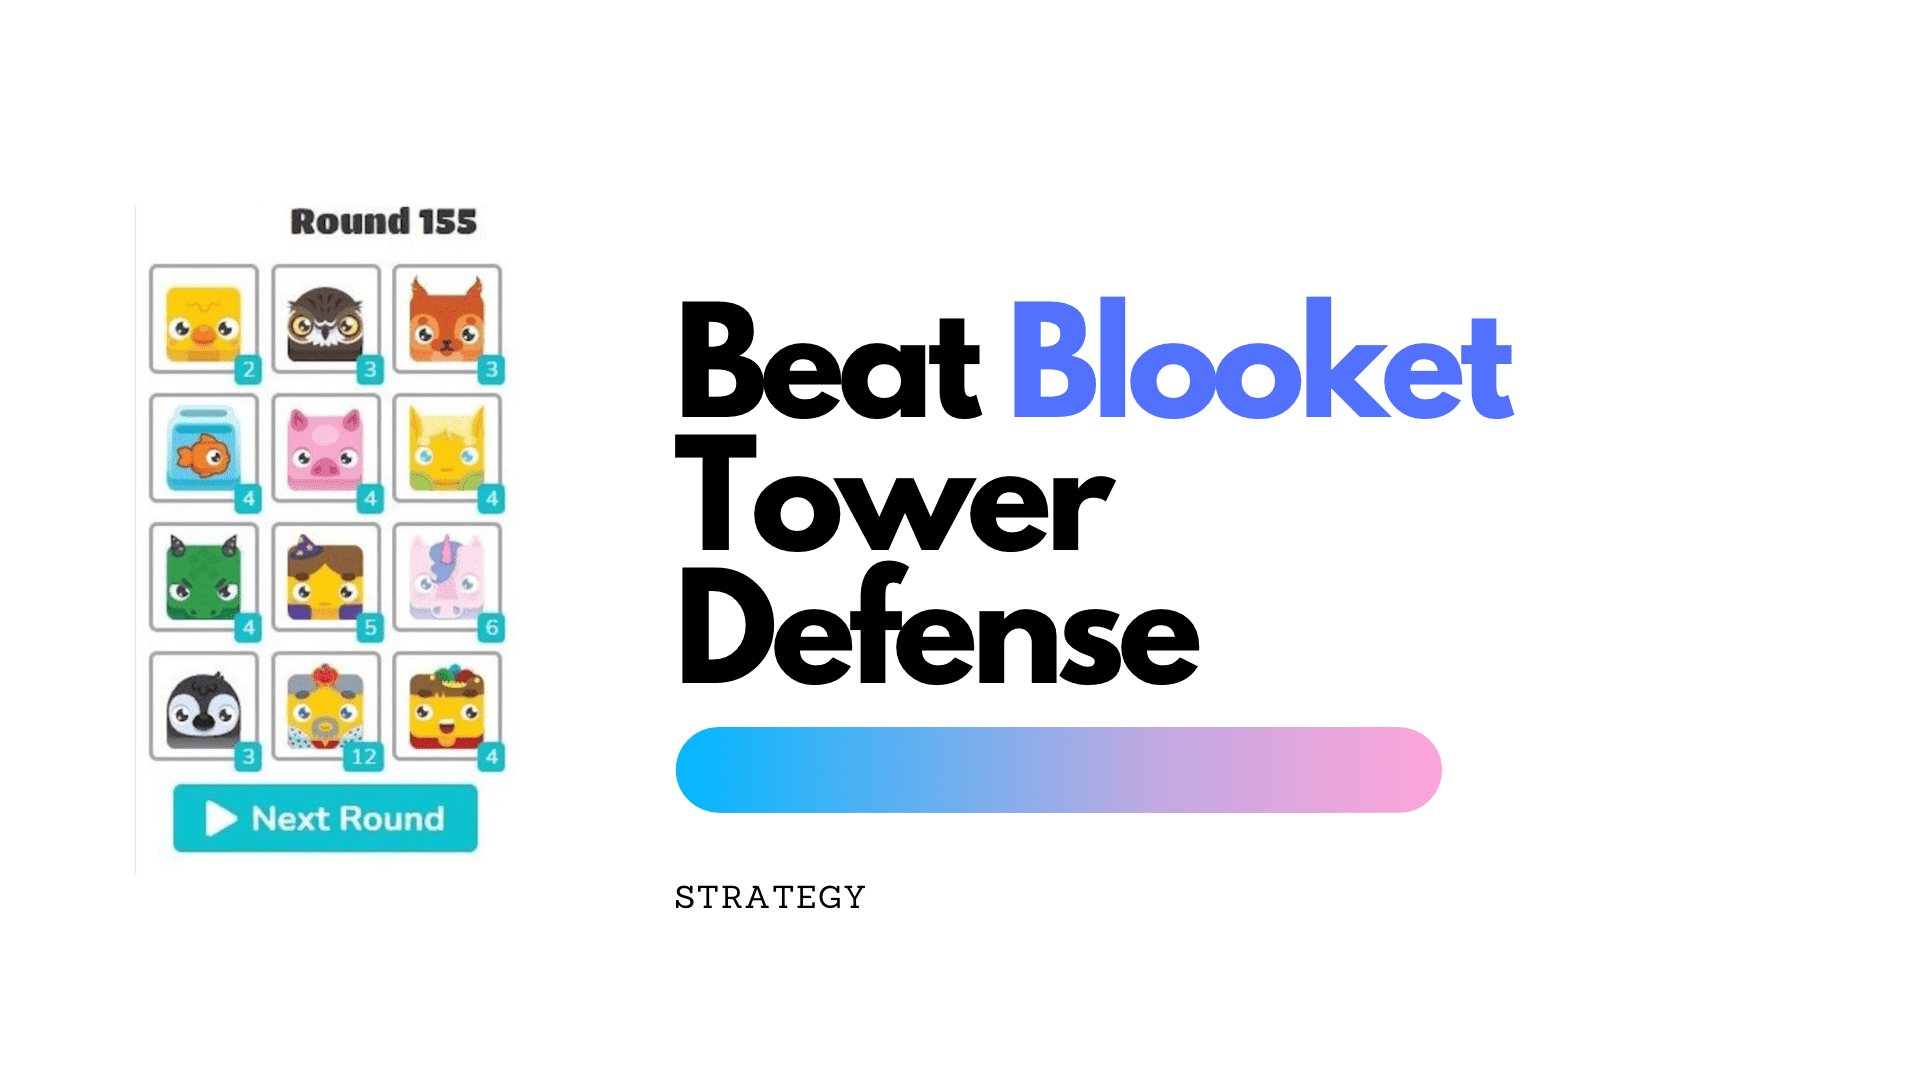 Blooket tower defense